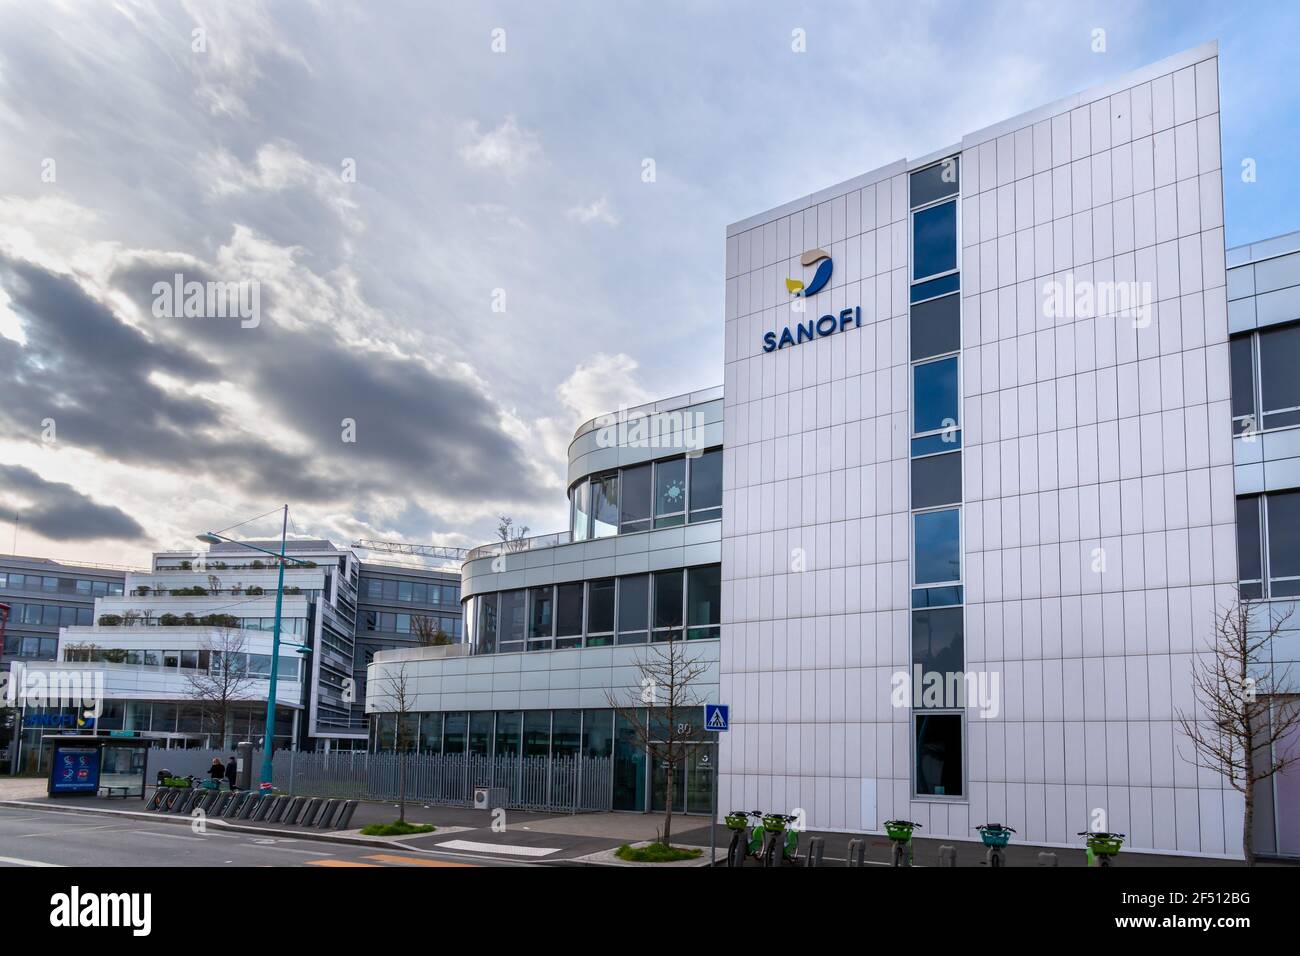 Gentilly, France, 21 mars 2021 : vue extérieure du siège social de Sanofi. Sanofi est une entreprise française spécialisée dans le secteur de la santé Banque D'Images